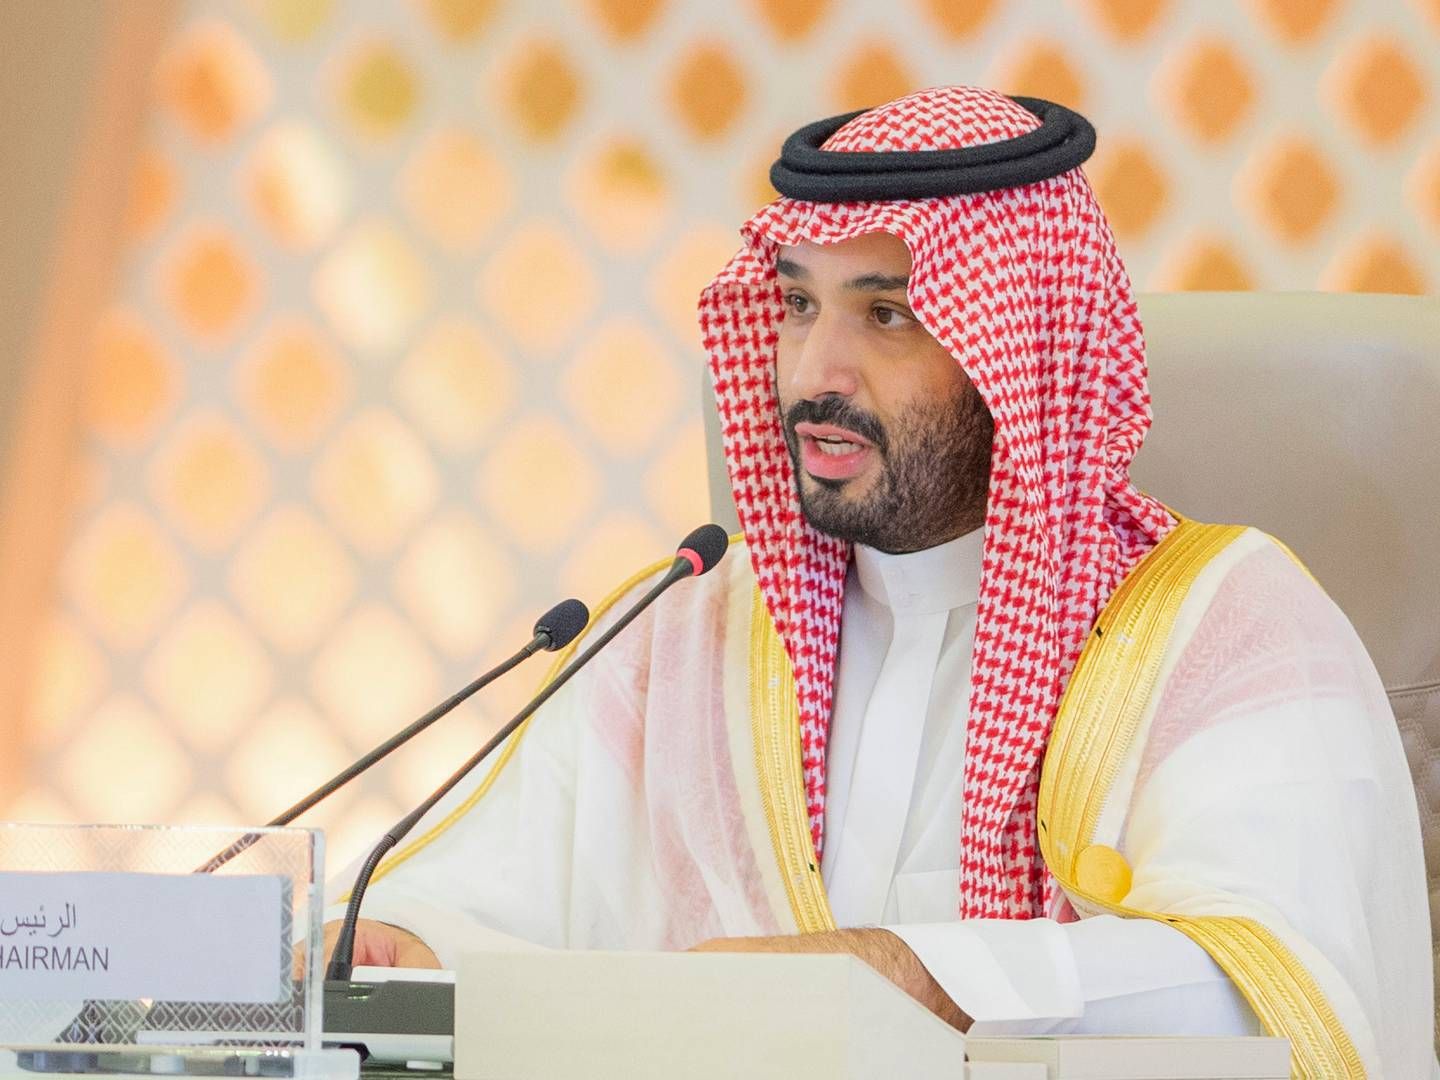 OPEC OLJEKURTT: Saudi Arabia vil kutte oljeproduksjonen med én million fat per dagen. | Foto: Saudi Press Agency via AP